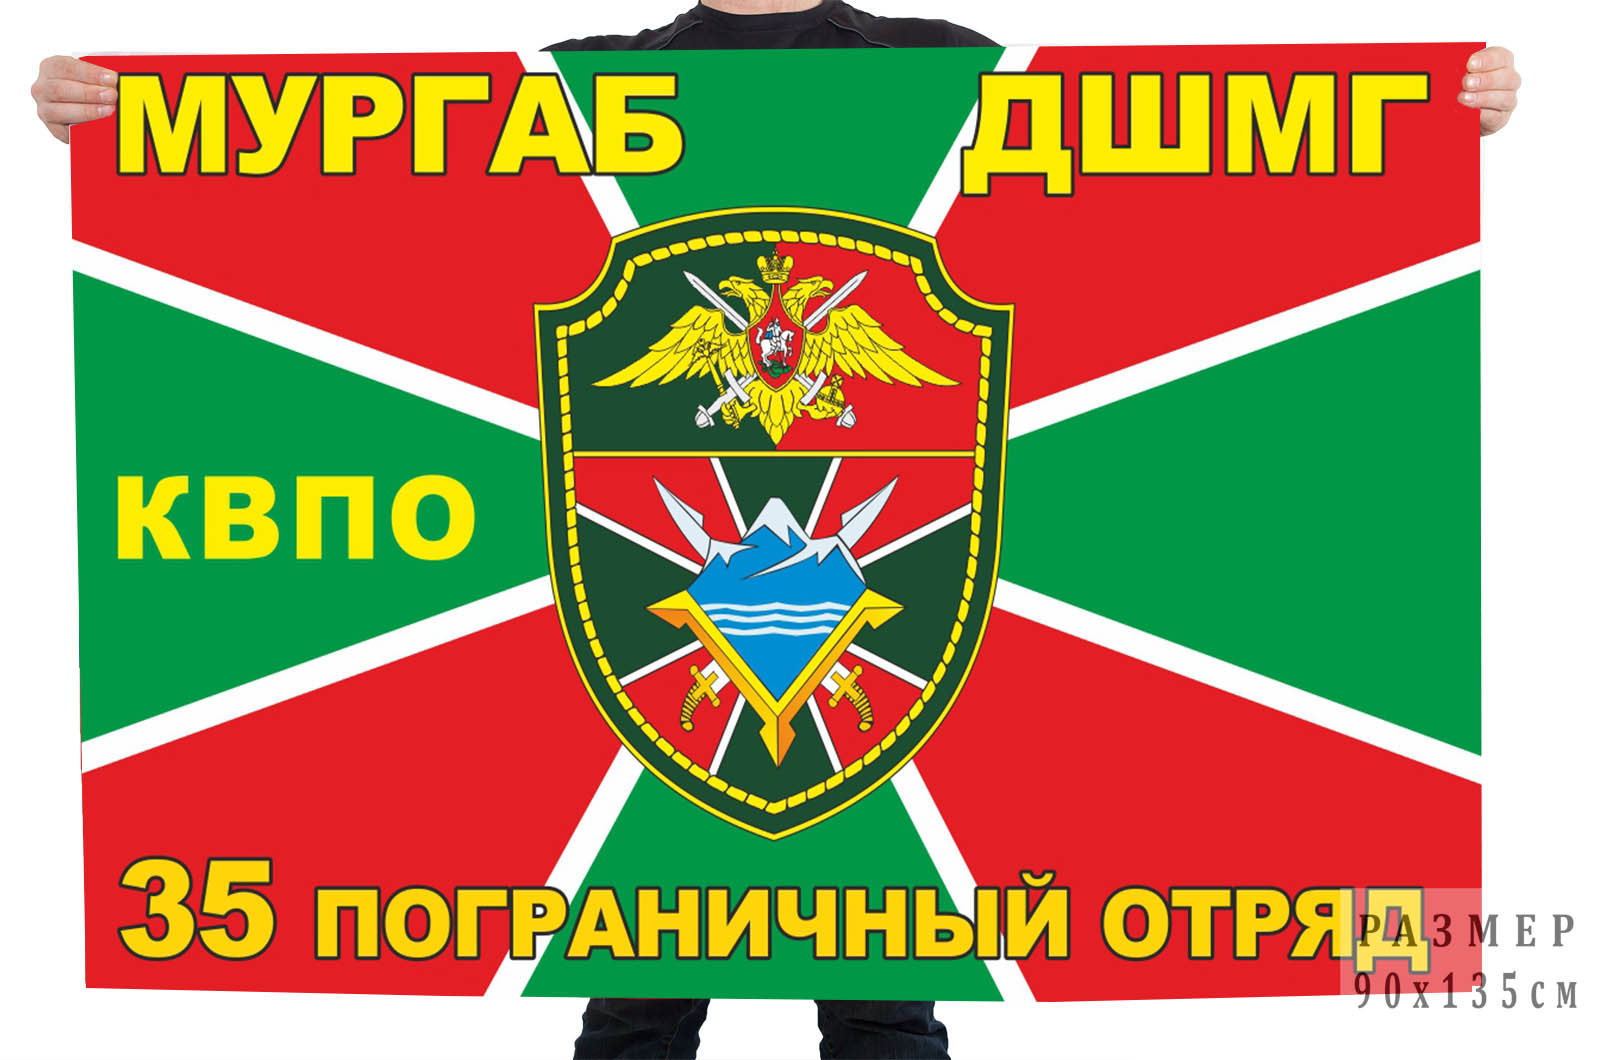 Флаг ДШМГ 35 пограничного отряда